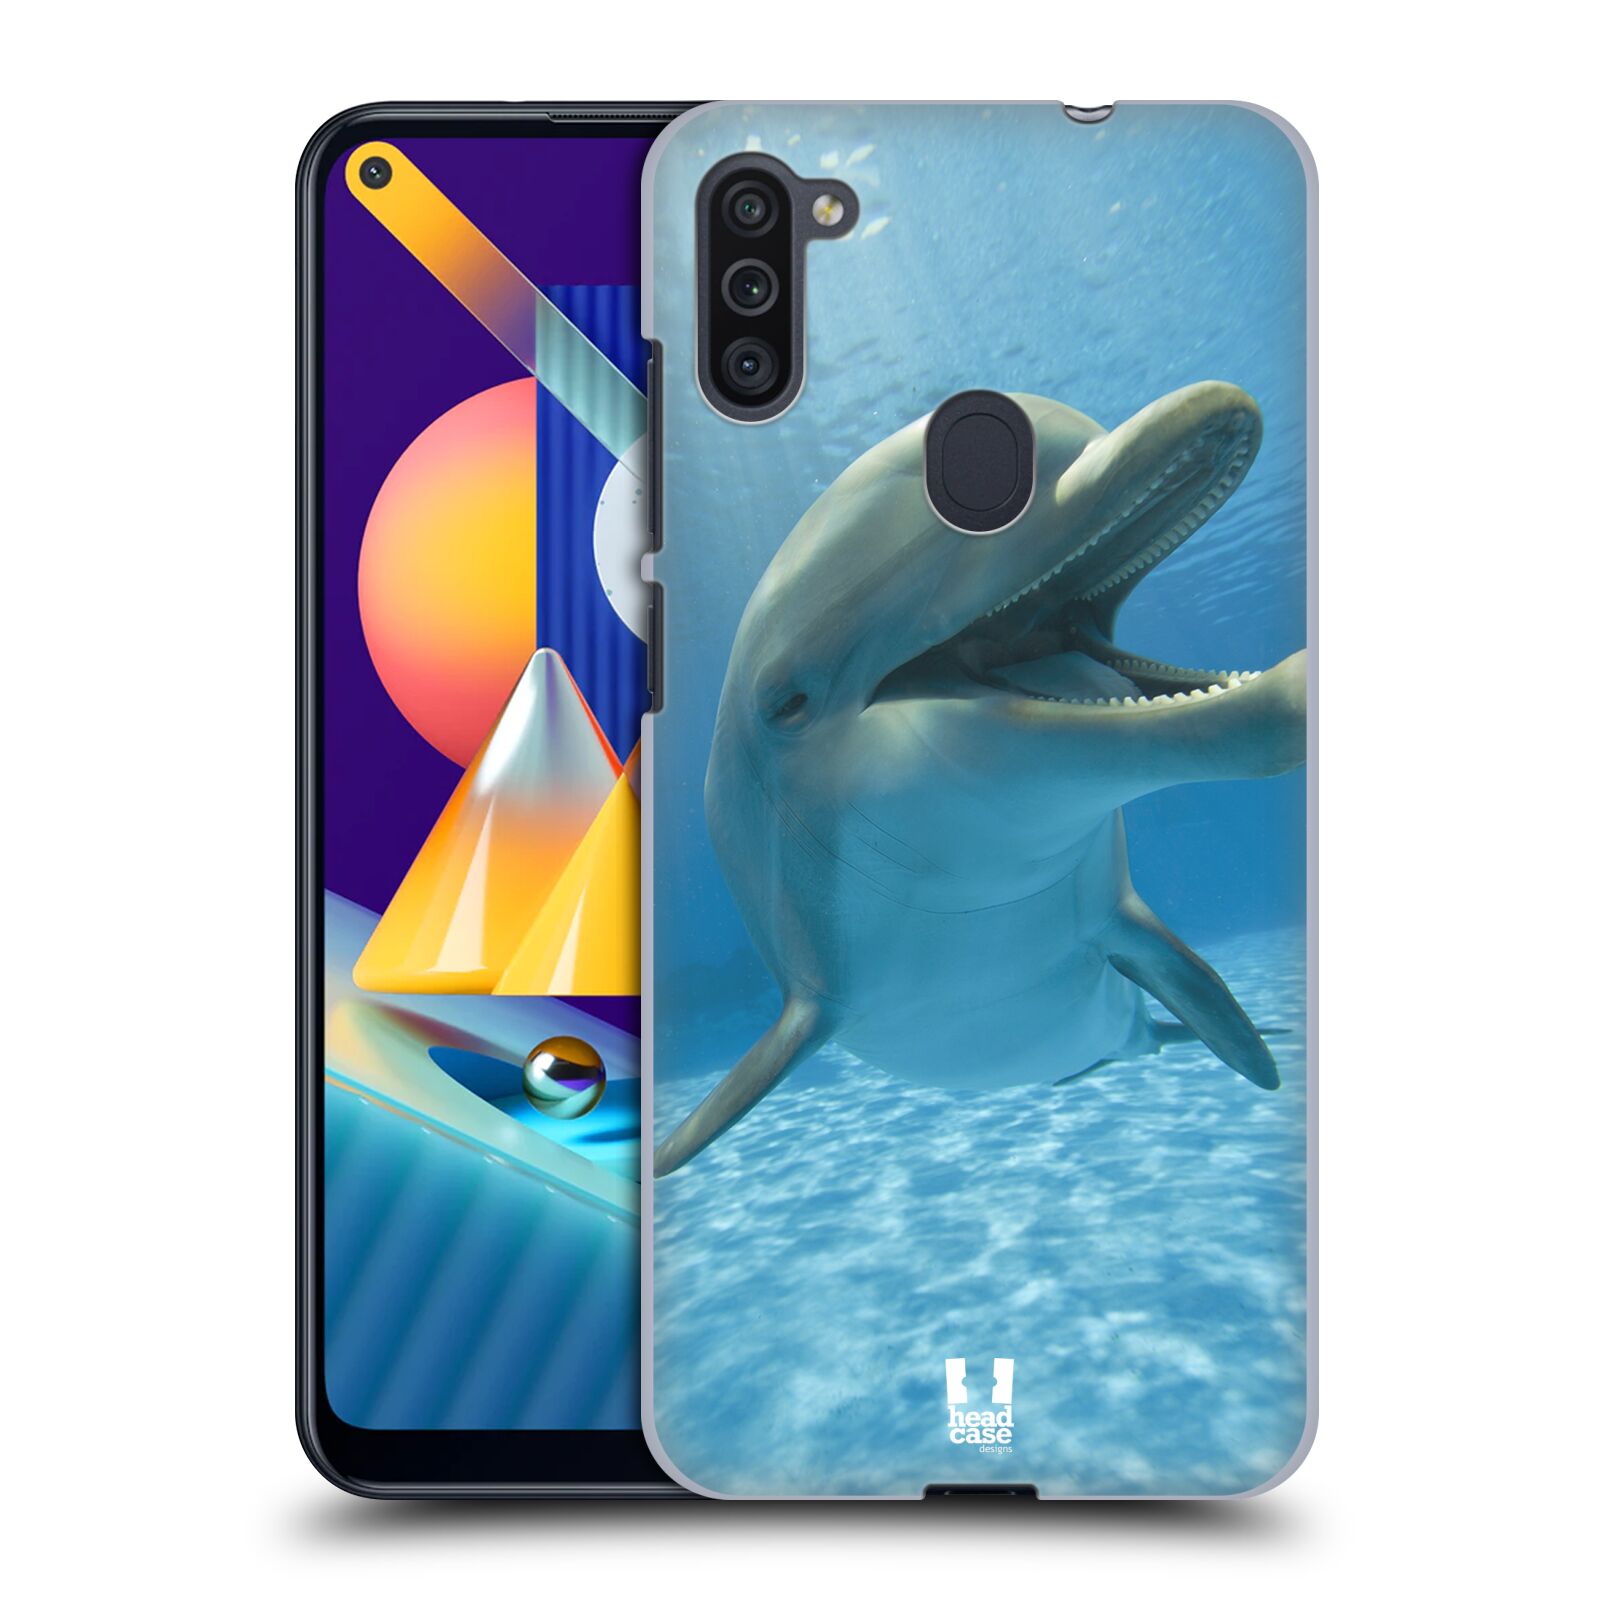 Zadní obal pro mobil Samsung Galaxy M11 - HEAD CASE - Svět zvířat delfín v moři